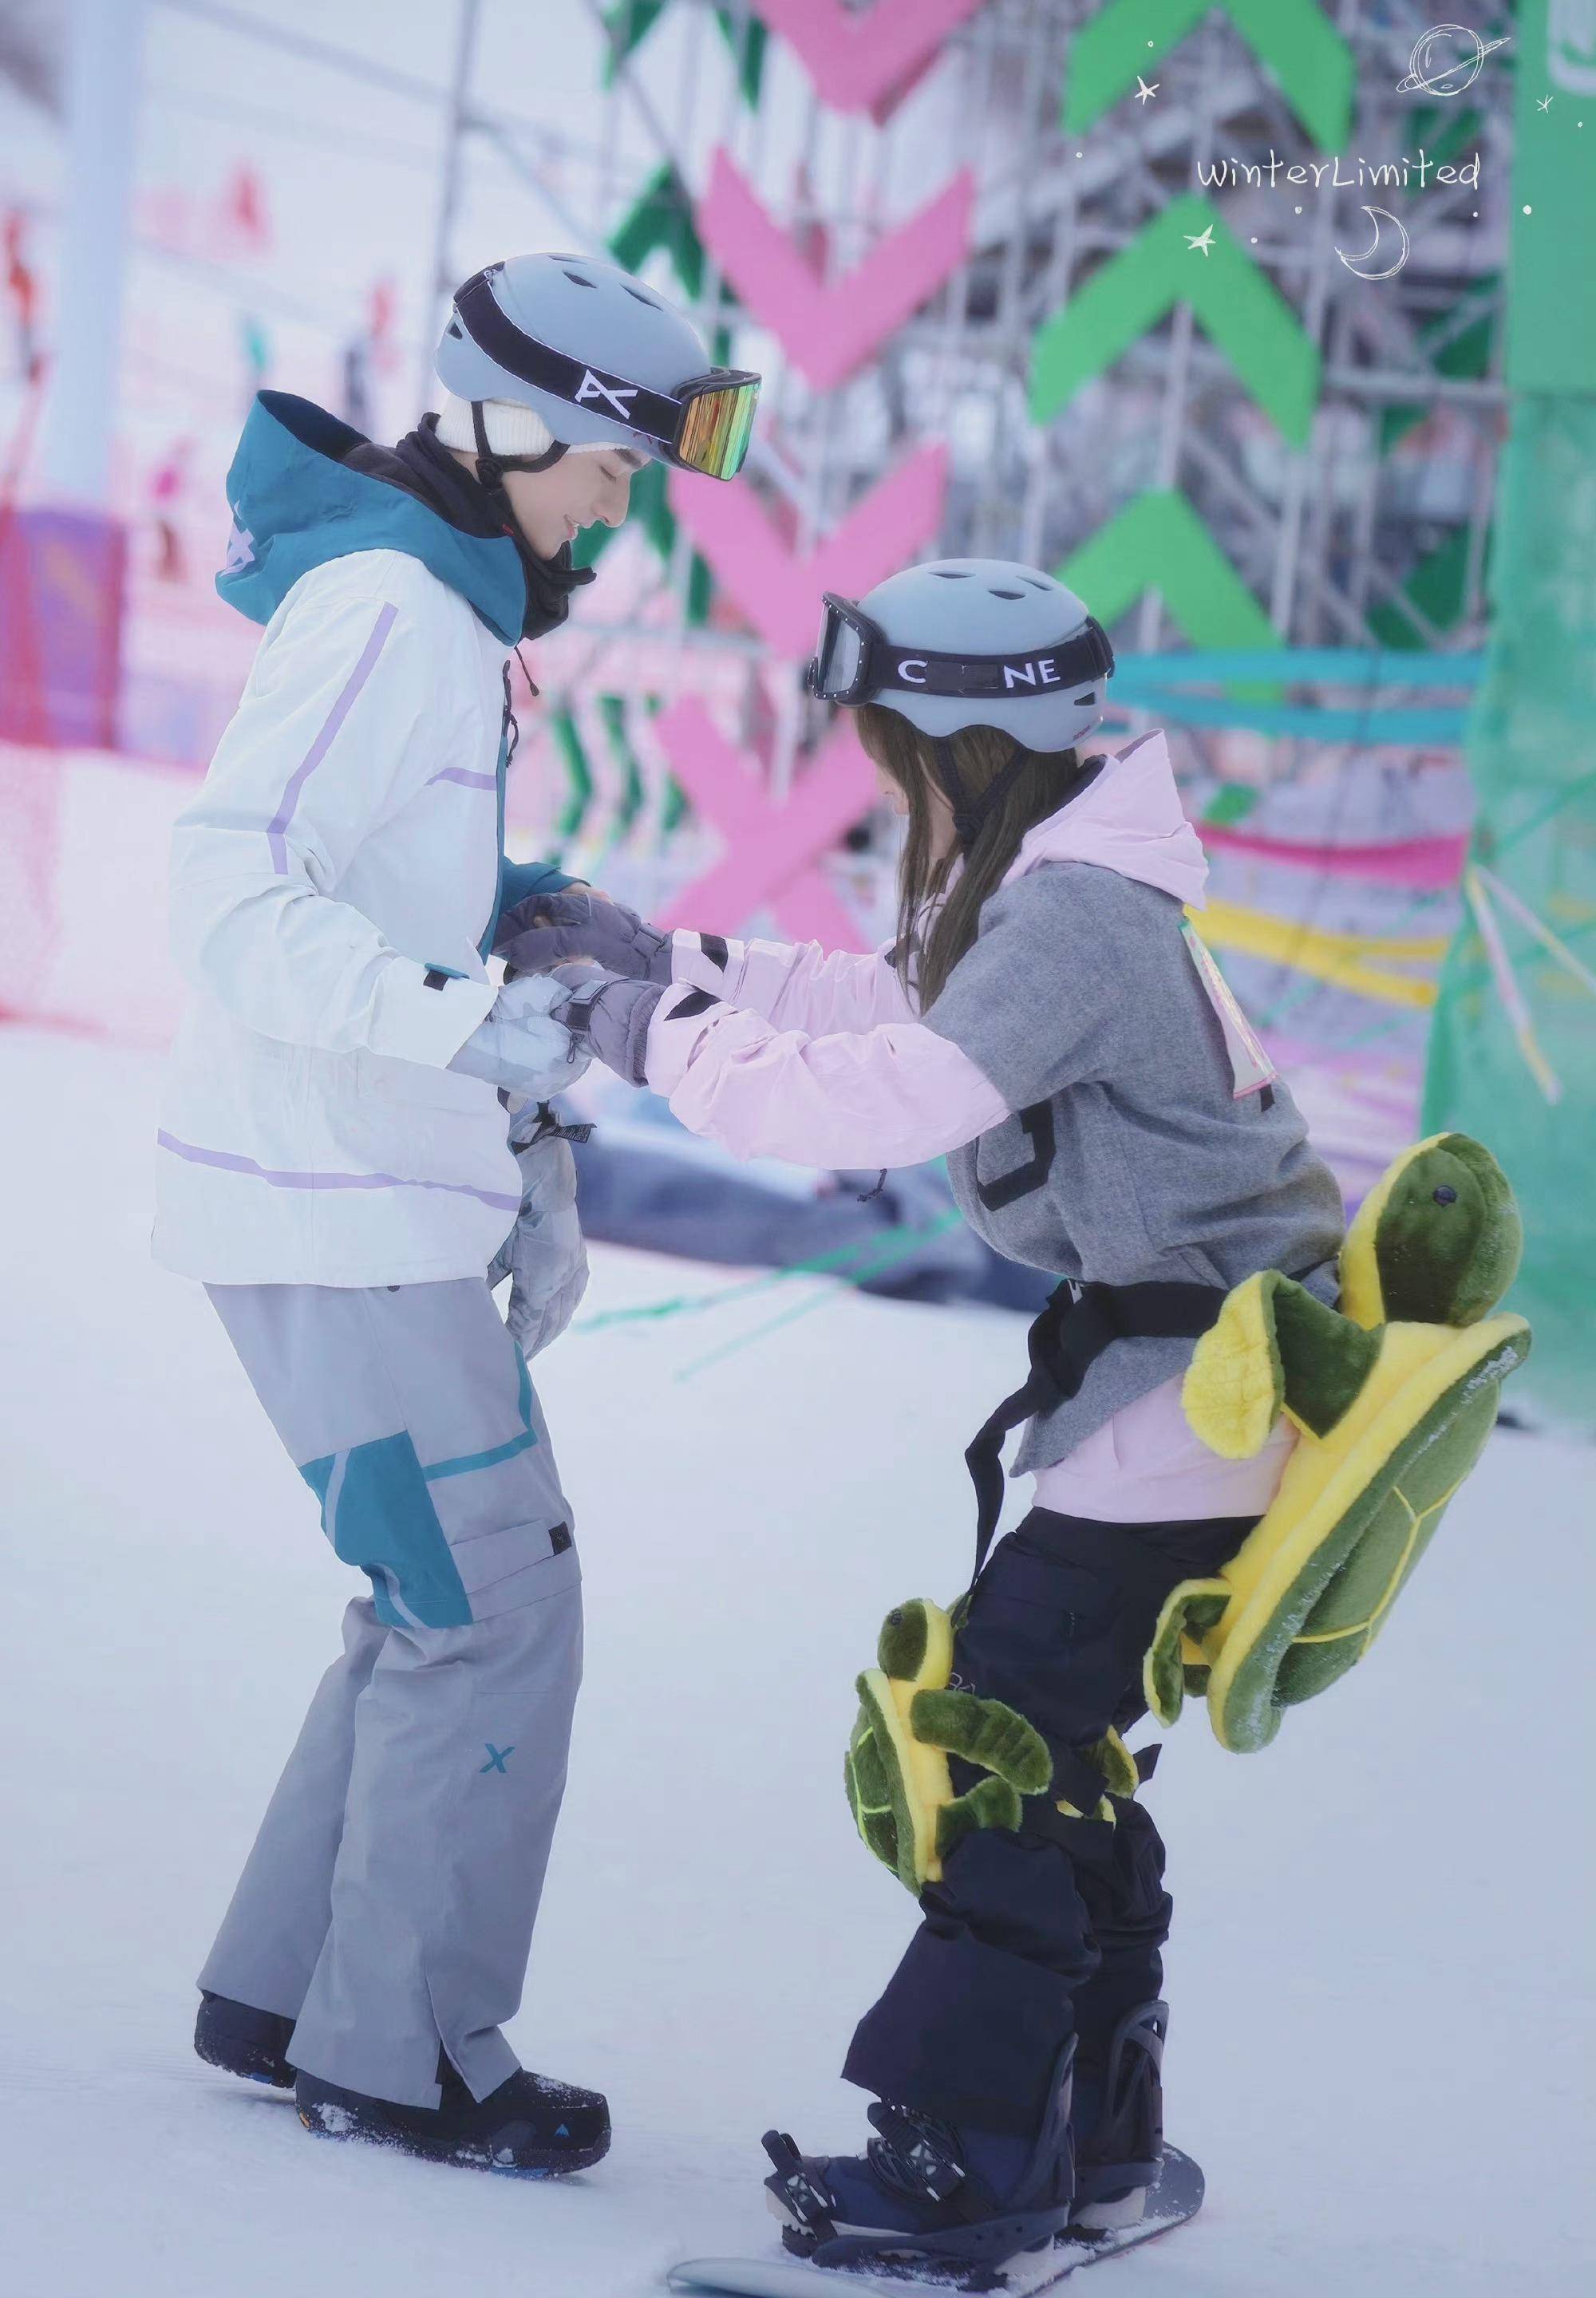 虞书欣一起合作过综艺超有趣滑雪大会》,就是滑雪题材,两位可爱的互动